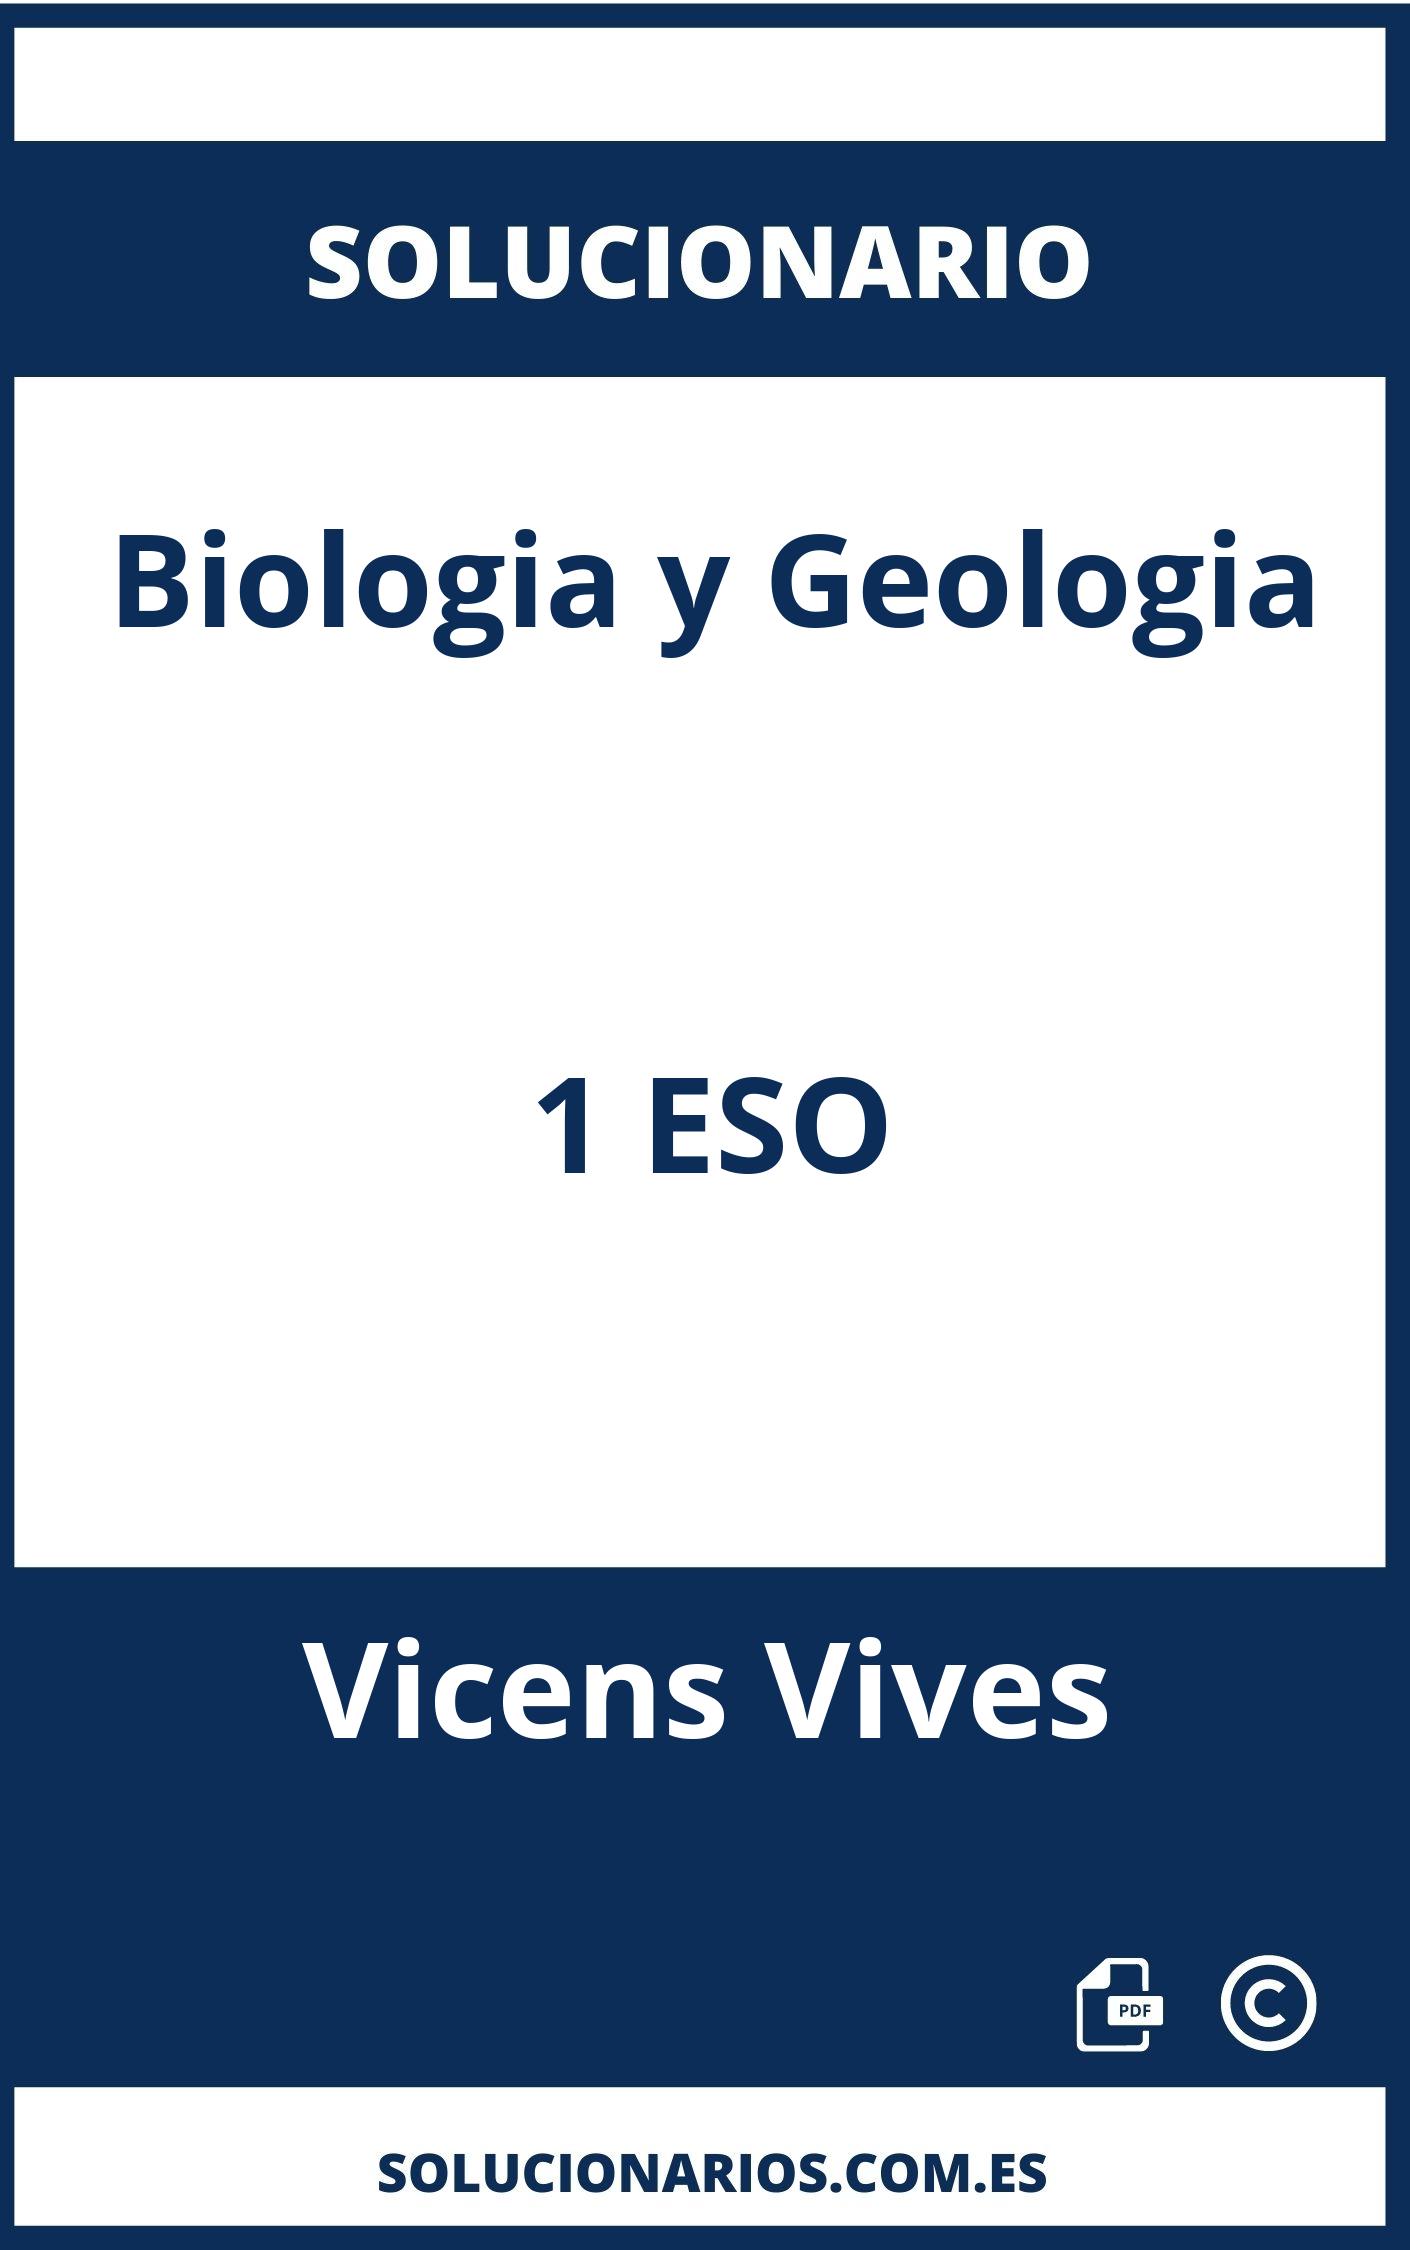 Solucionario Biologia y Geologia 1 ESO Vicens Vives